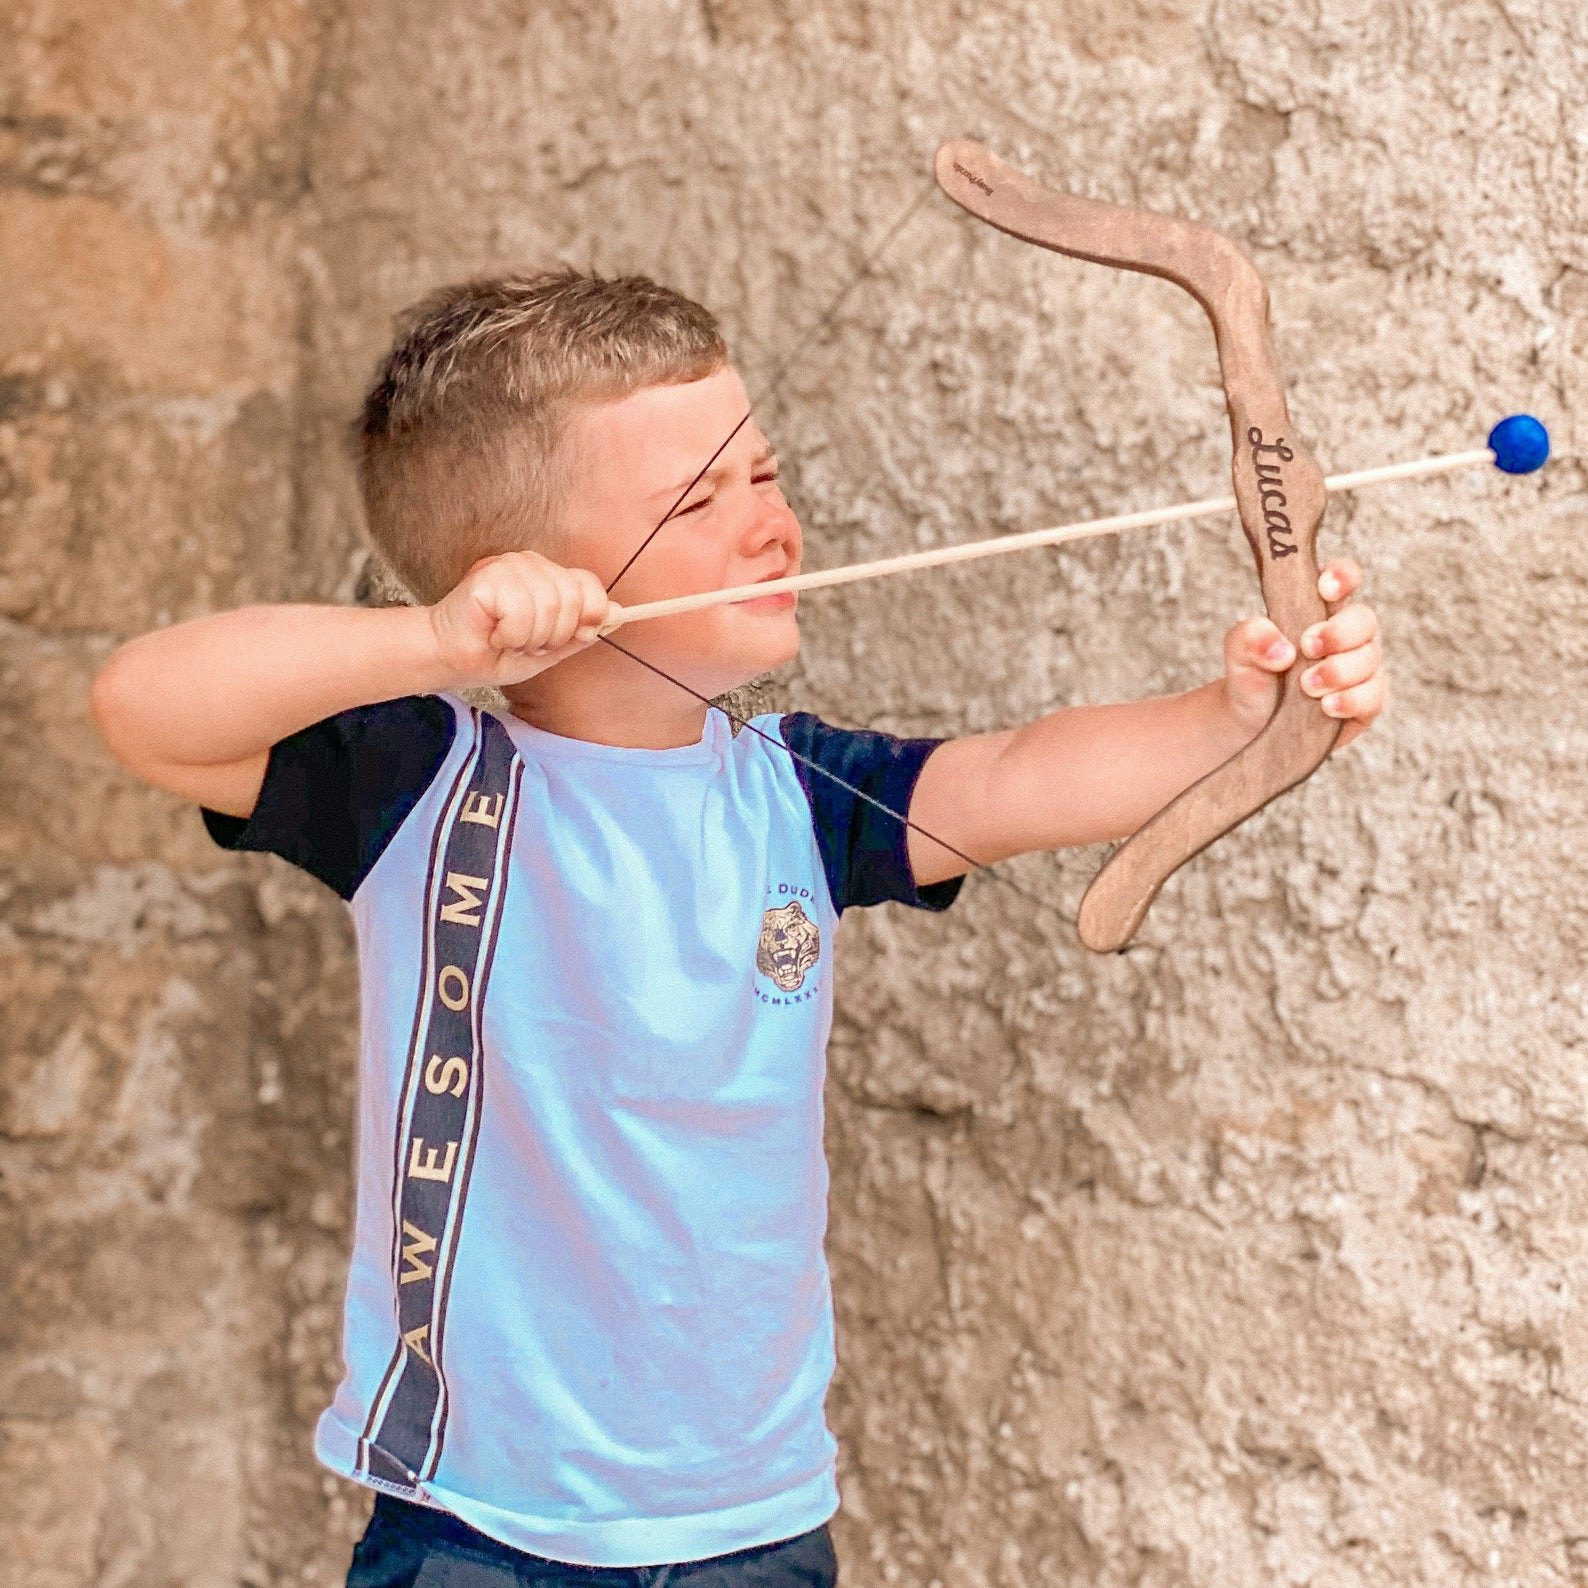 Junior Plastic Bow & Arrow Archery Set Children's Indoor Outdoor Game Xmas Gift 